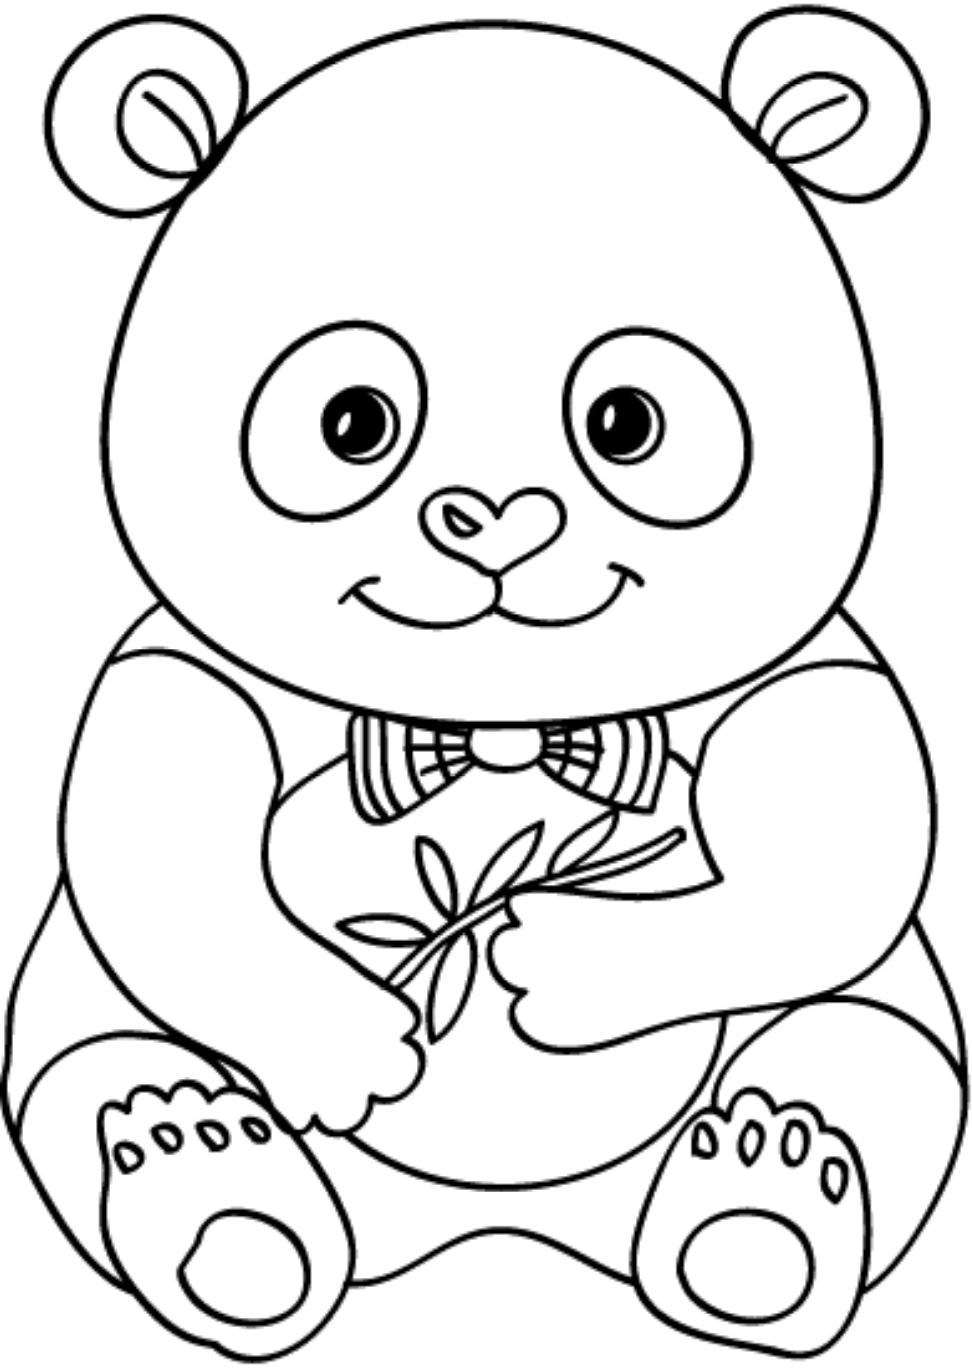 Cách vẽ gấu Trúc đơn giản xuhuong vegau vegautruc panda bear t   TikTok